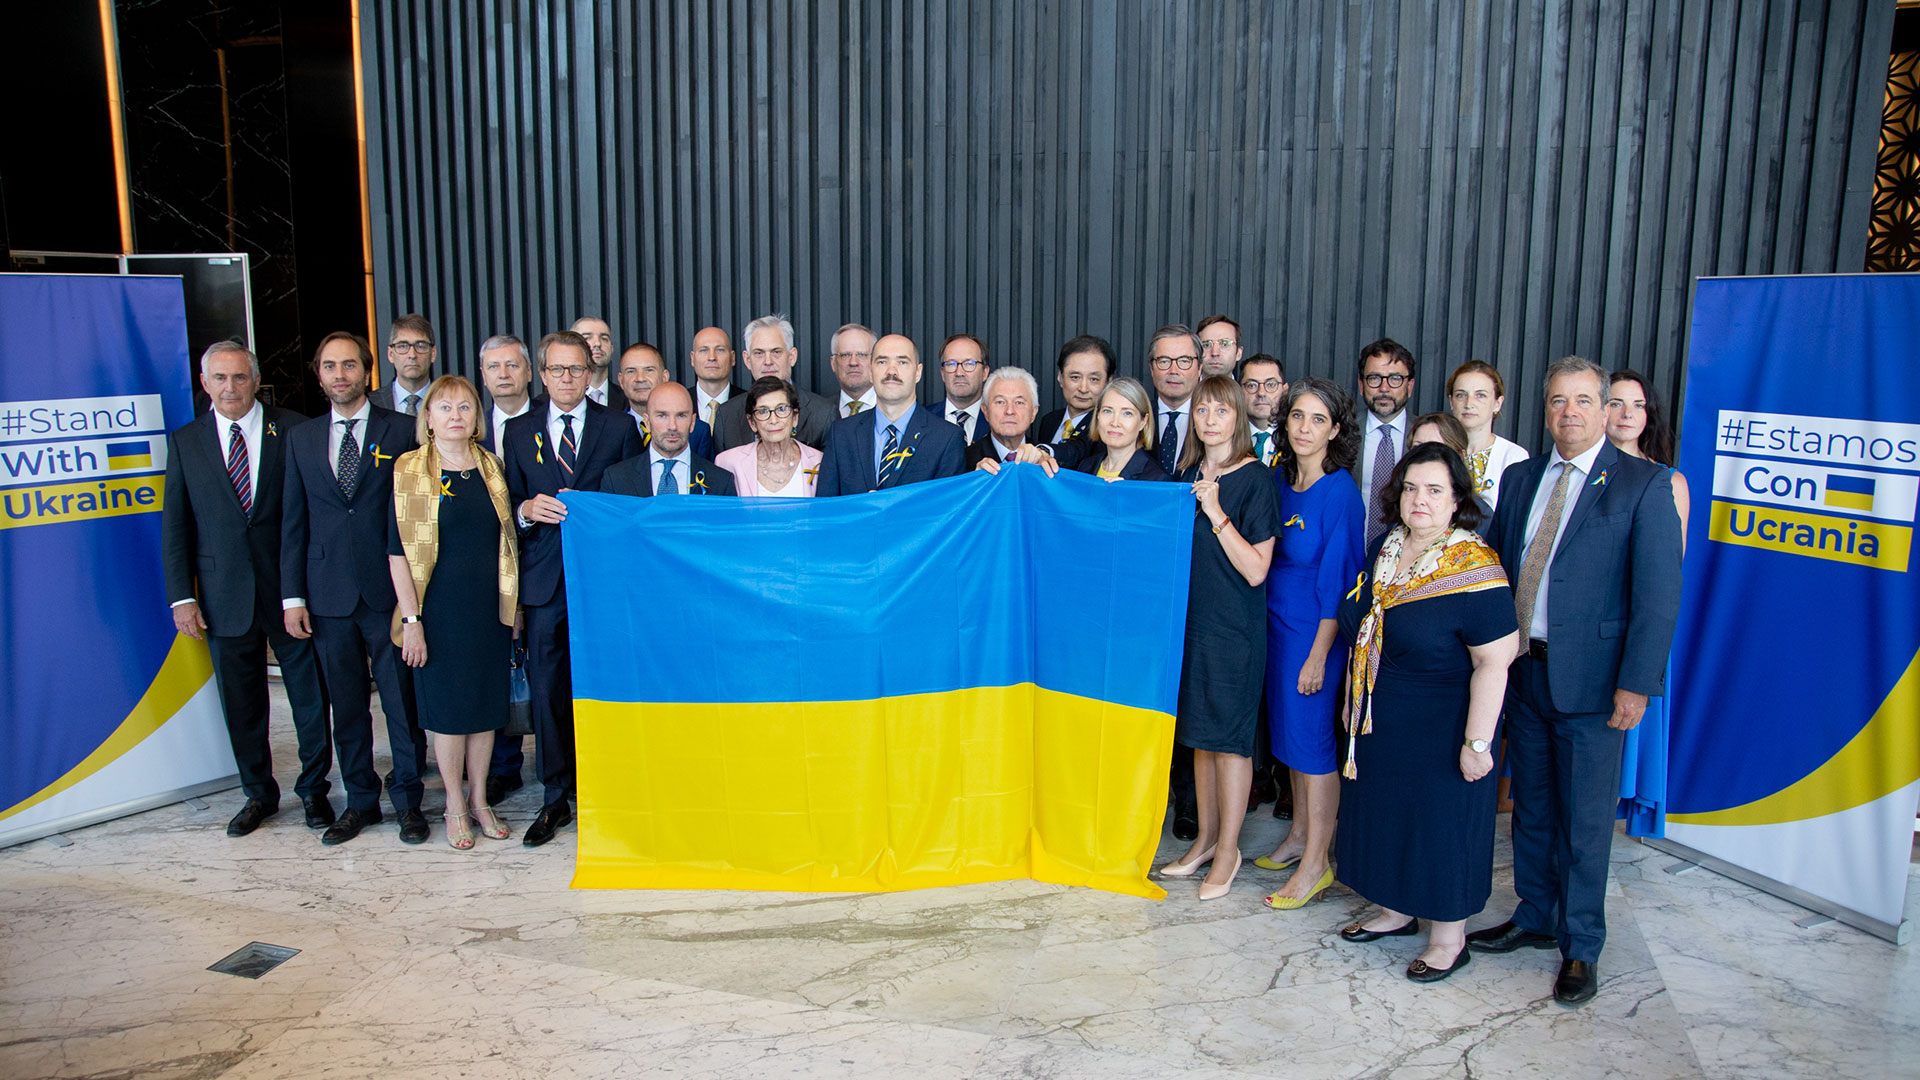 Los embajadores de los Estados Miembros de la Unión Europea, el Encargado de Negocios de Ucrania en Argentina, los Jefes de Misión de los países del G7 y de Australia, Georgia y Noruega, posaron junto a la bandera de Ucrania para reafirmar su condena a la invasión rusa